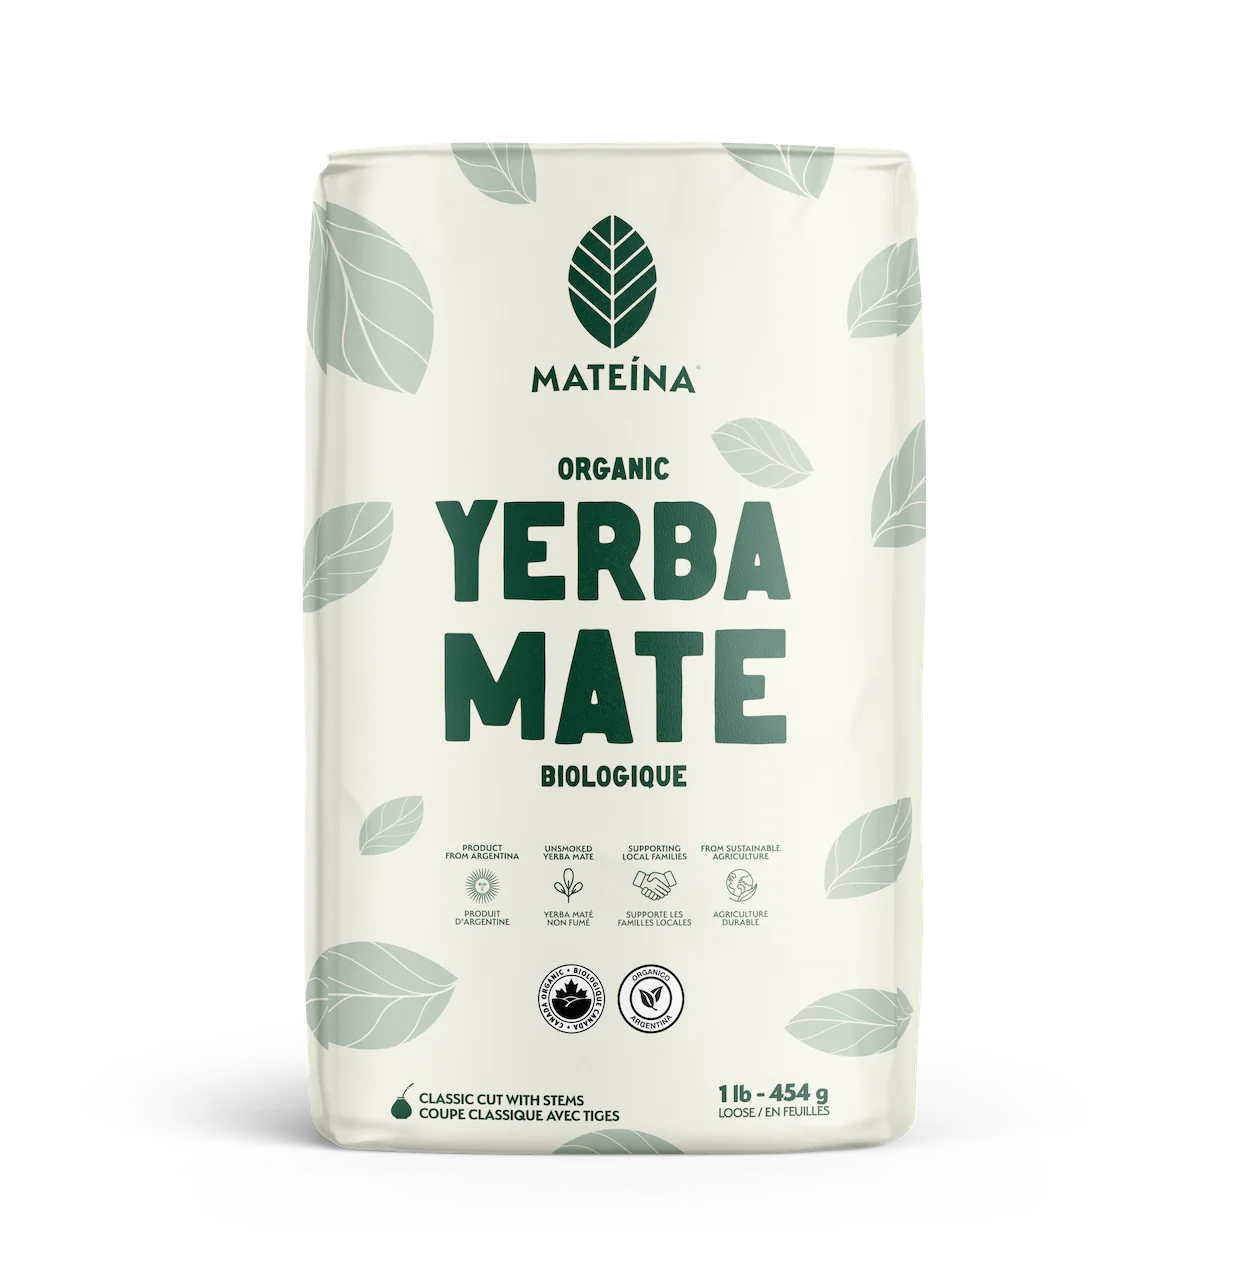 Organic Yerba Mate